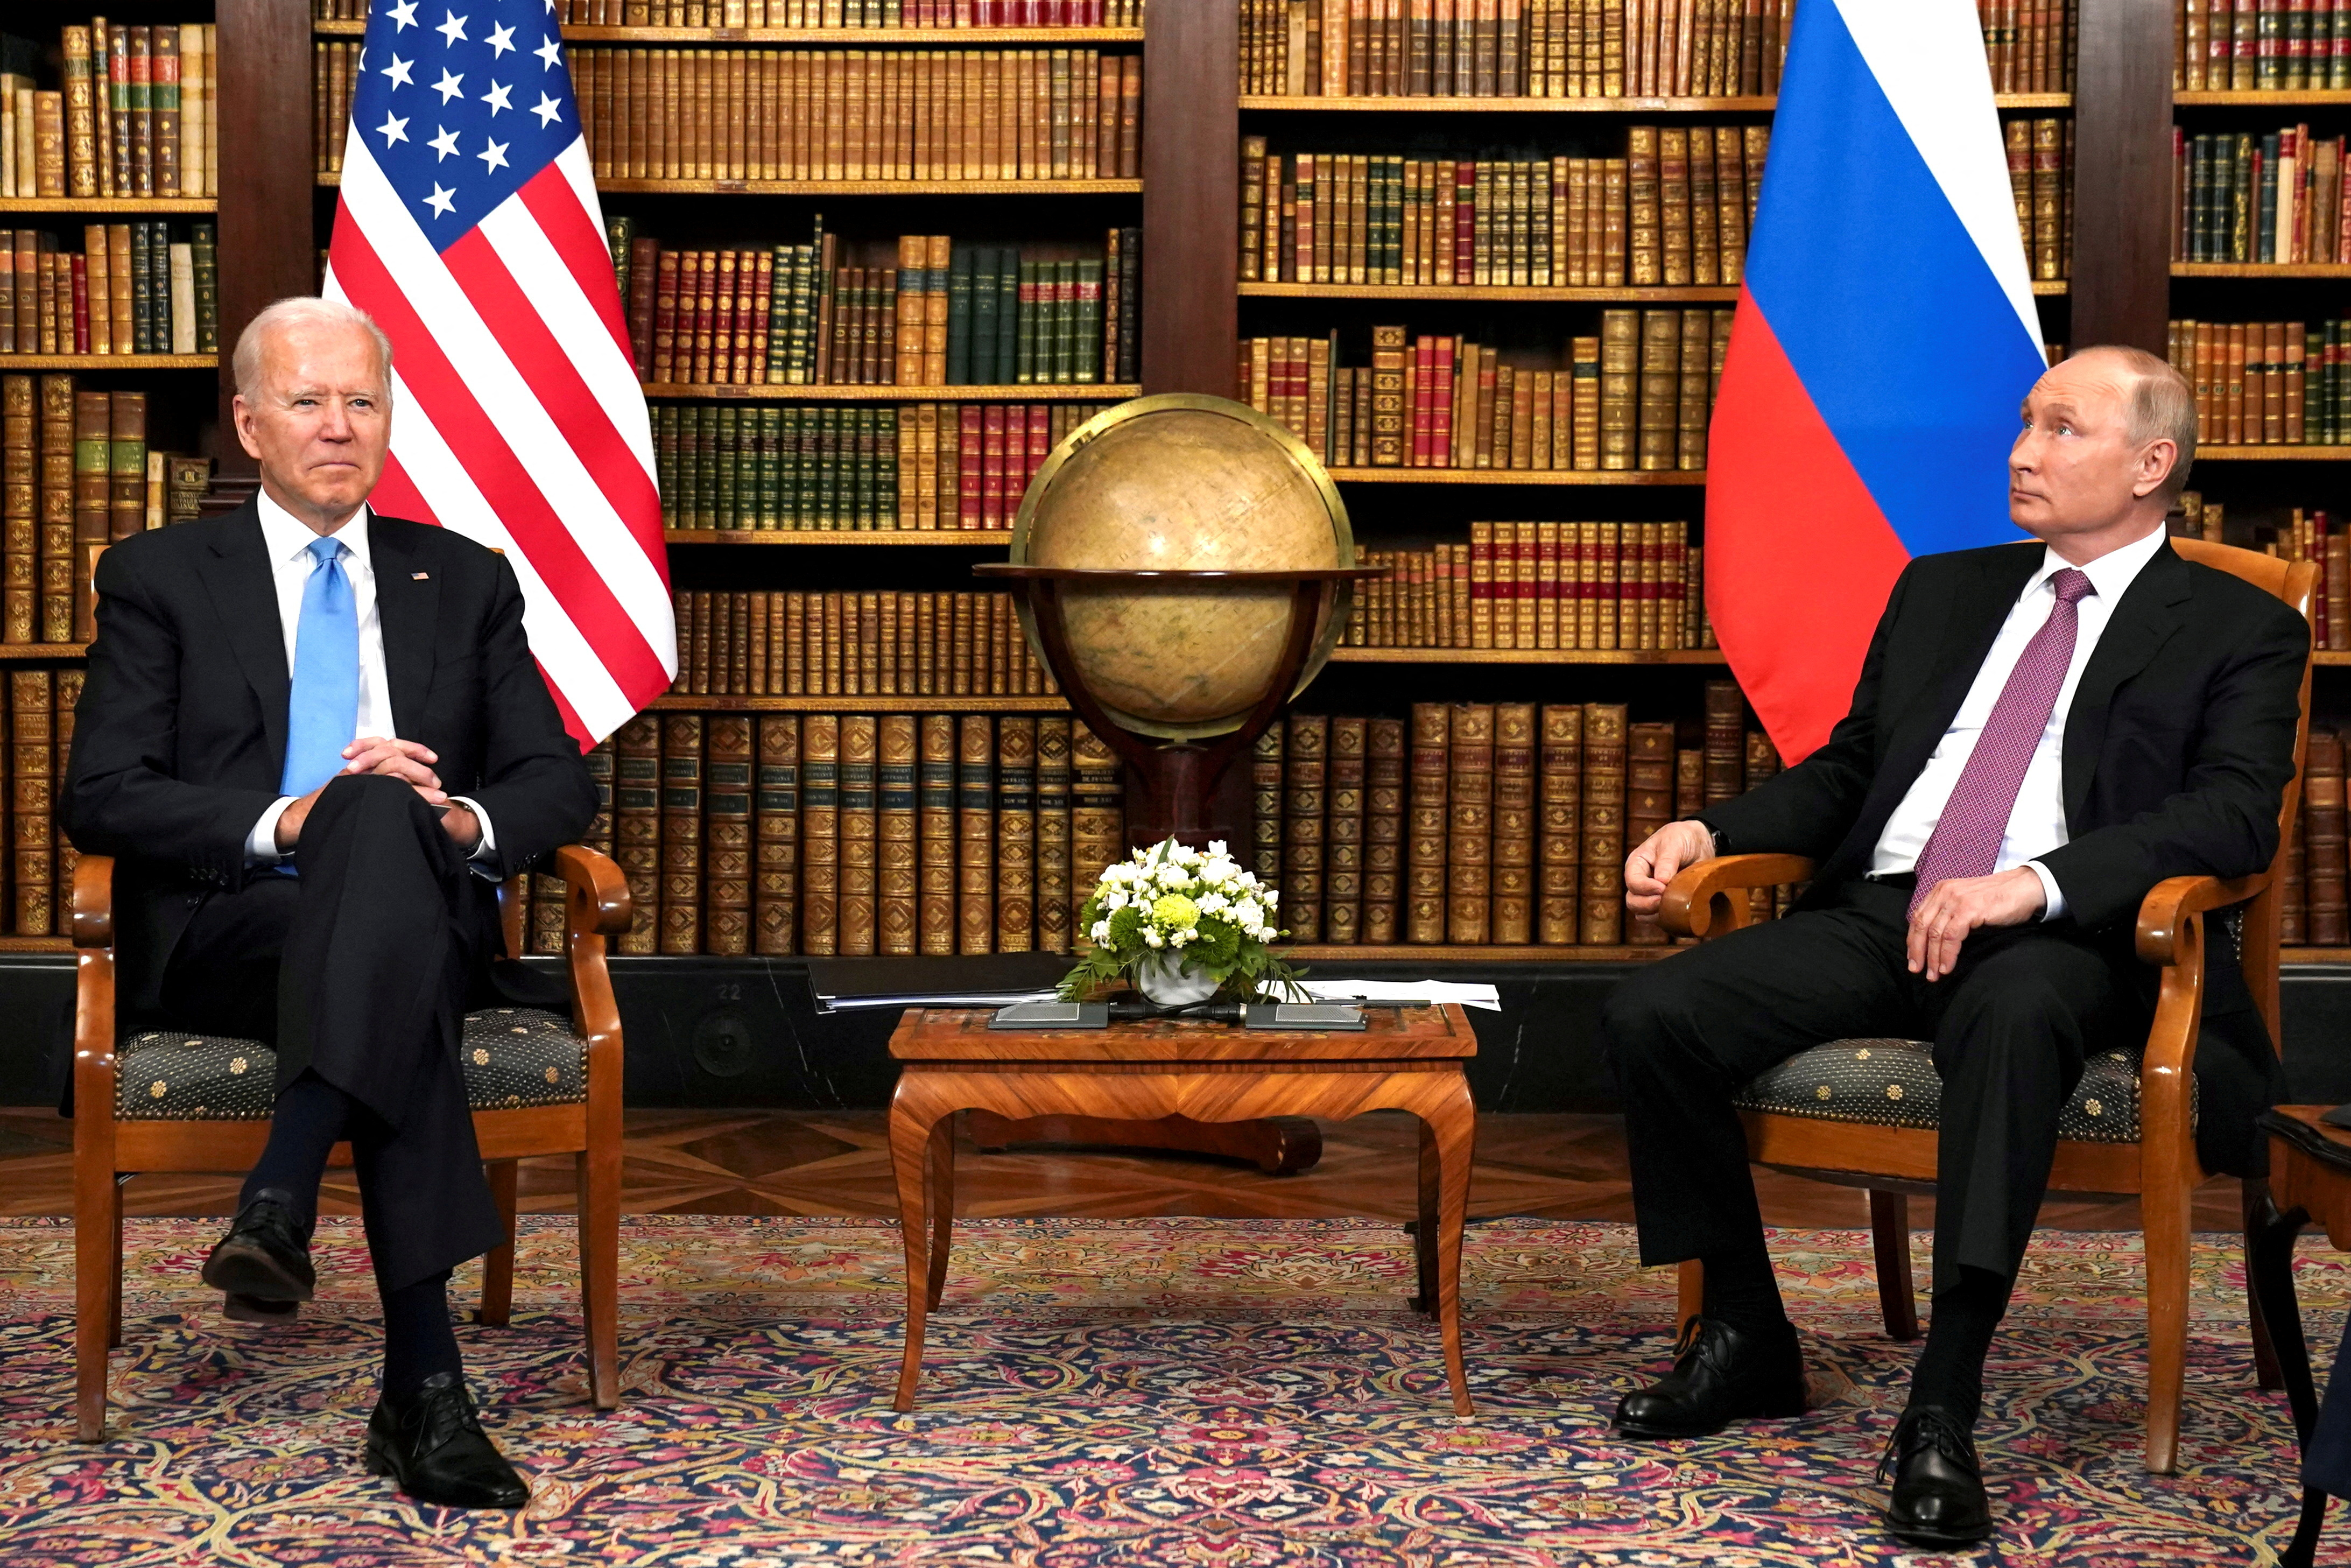 FOTO DE ARCHIVO: El presidente de Estados Unidos, Joe Biden, y el presidente de Rusia, Vladimir Putin, se reúnen para la cumbre entre Estados Unidos y Rusia en Villa La Grange en Ginebra, Suiza, el 16 de junio de 2021 (REUTERS/Kevin Lamarque/File Photo)